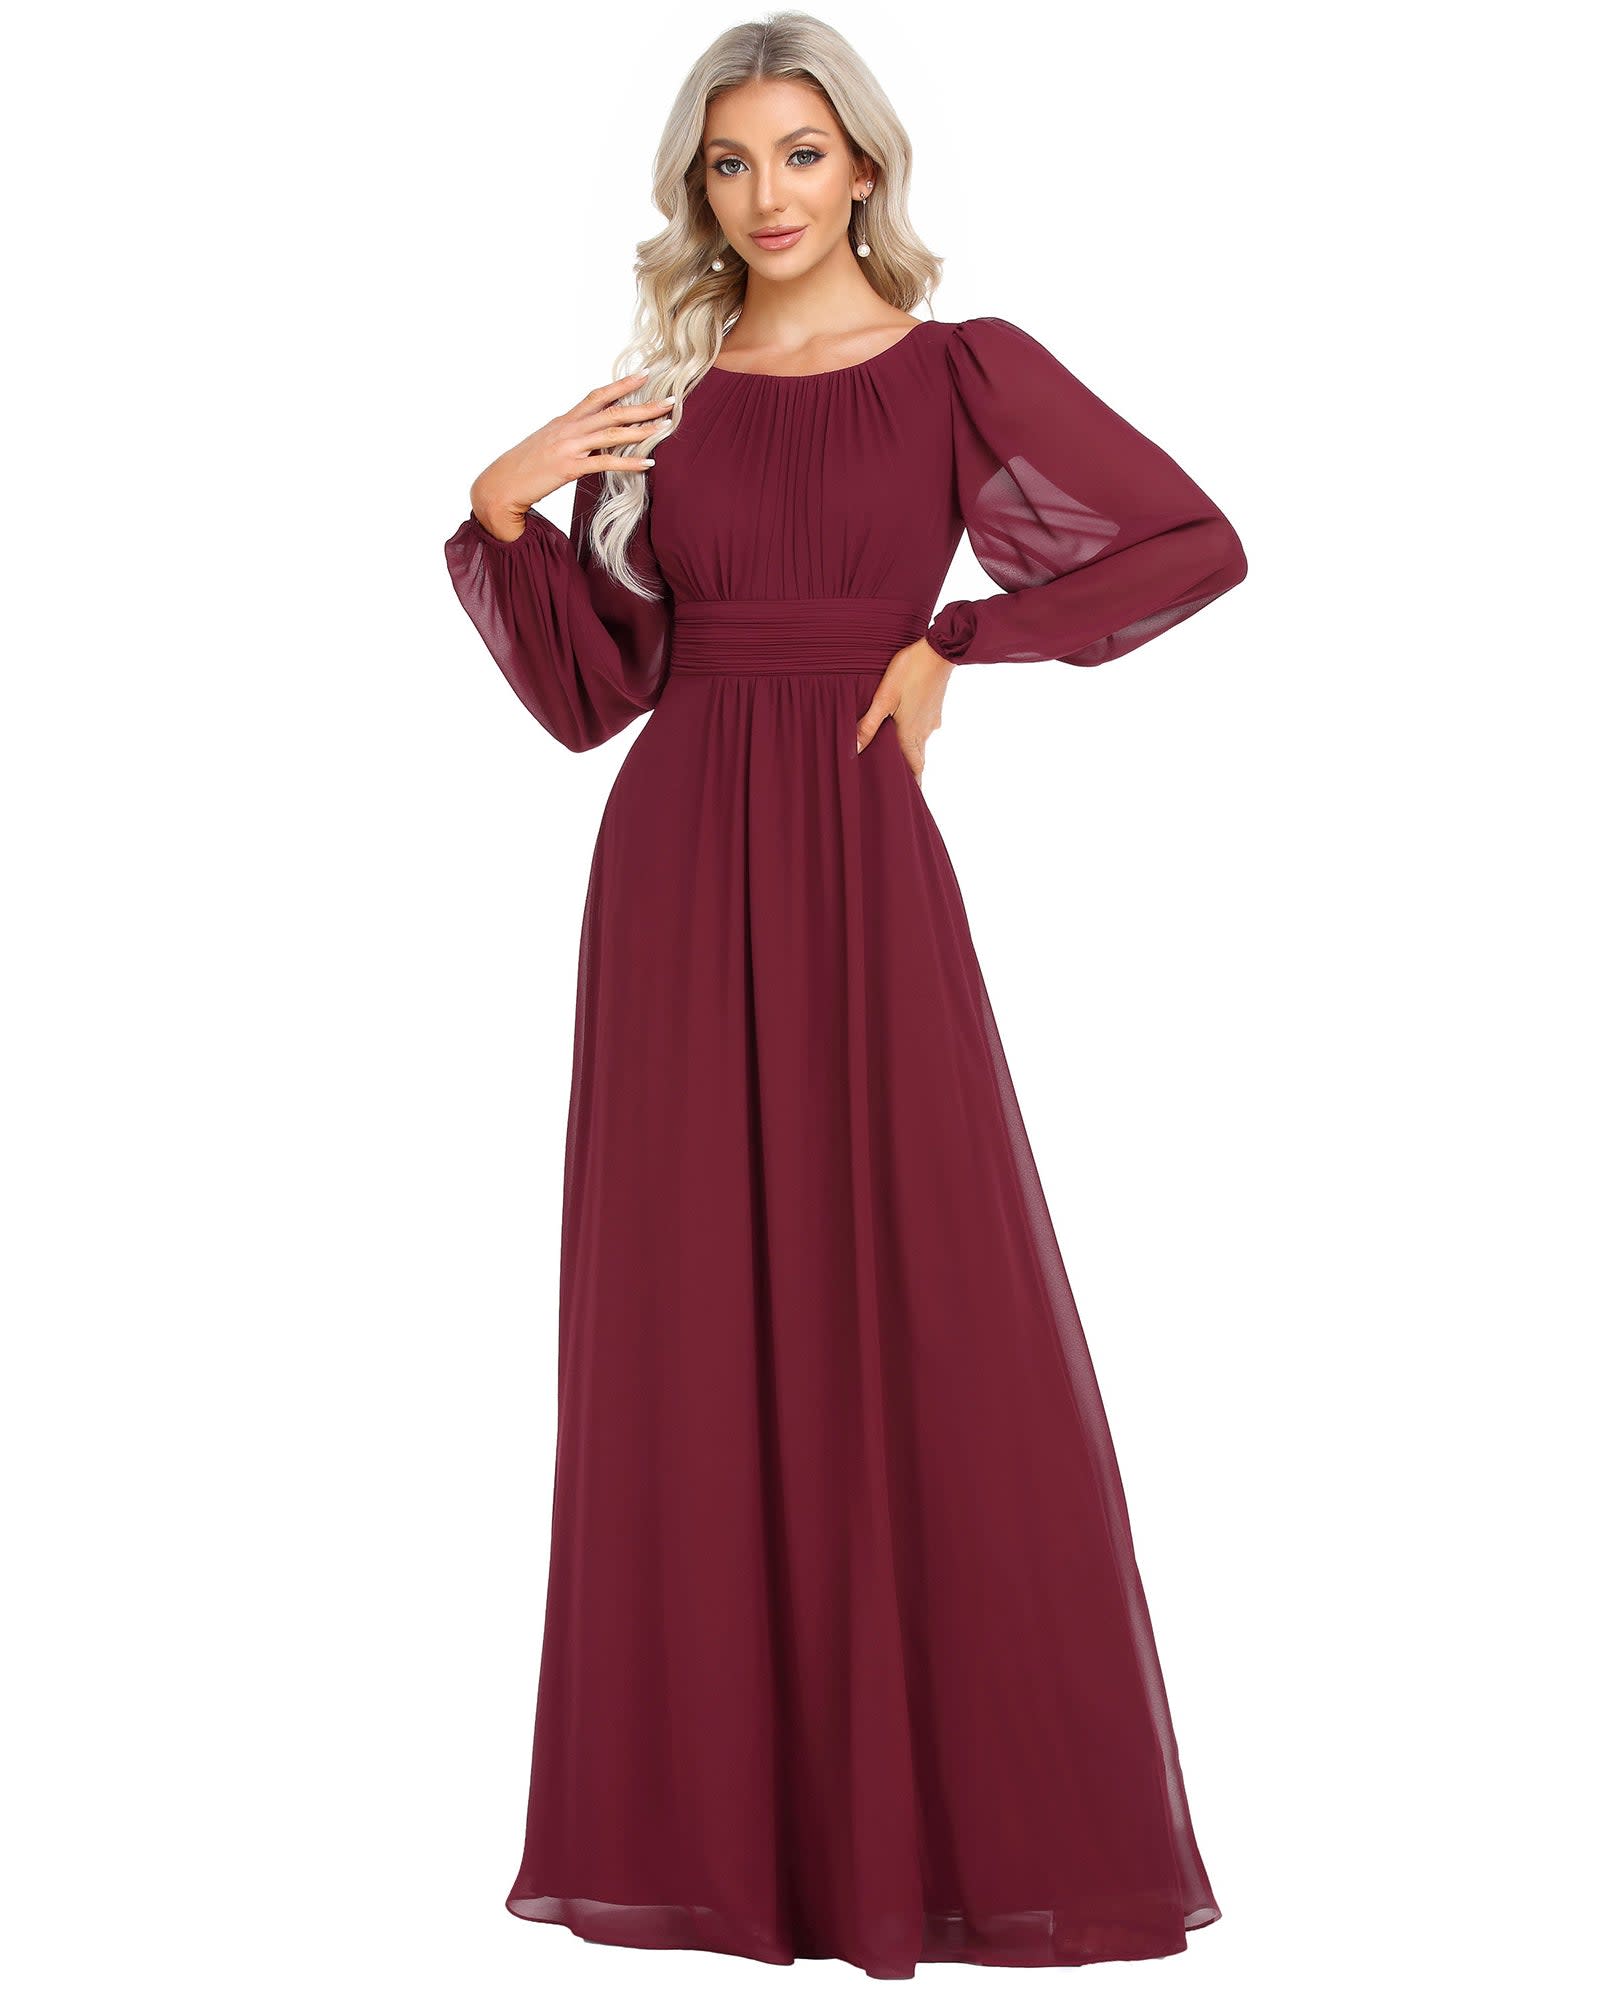 Chiffon High Empire Waist Puff Sleeve Mother Dress | Burgundy